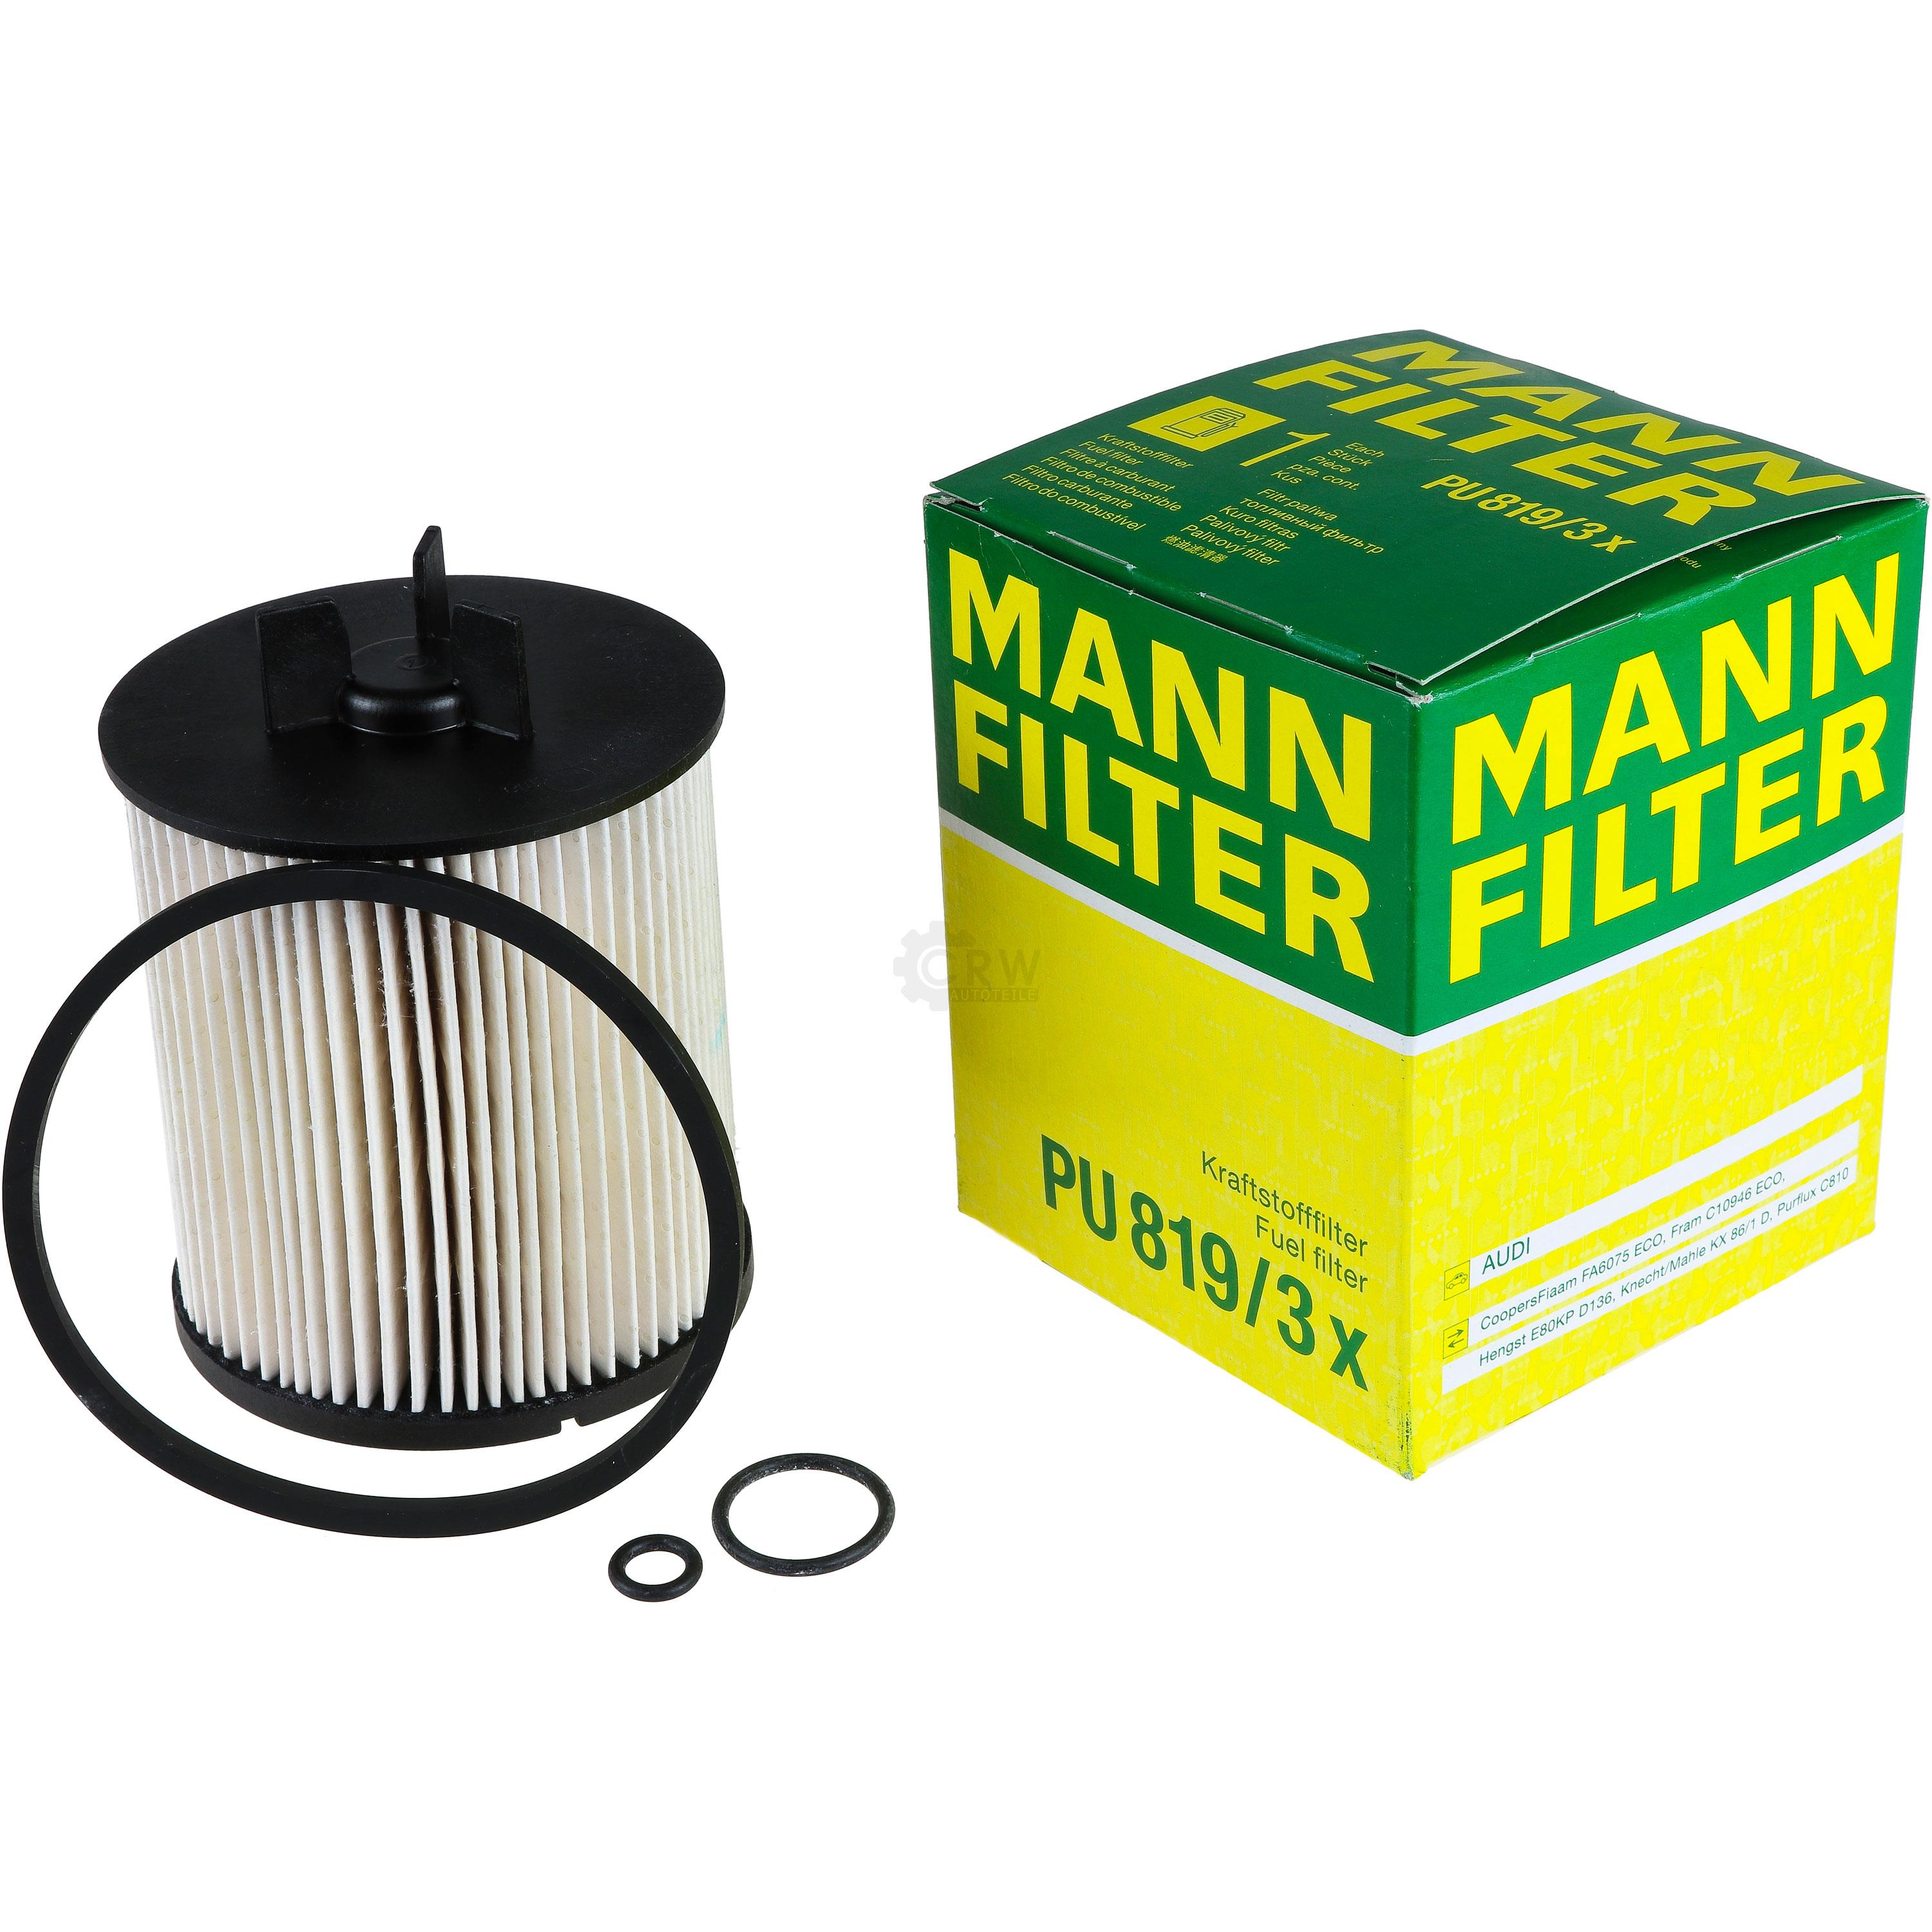 MANN-FILTER Kraftstofffilter PU 819/3 x Fuel Filter